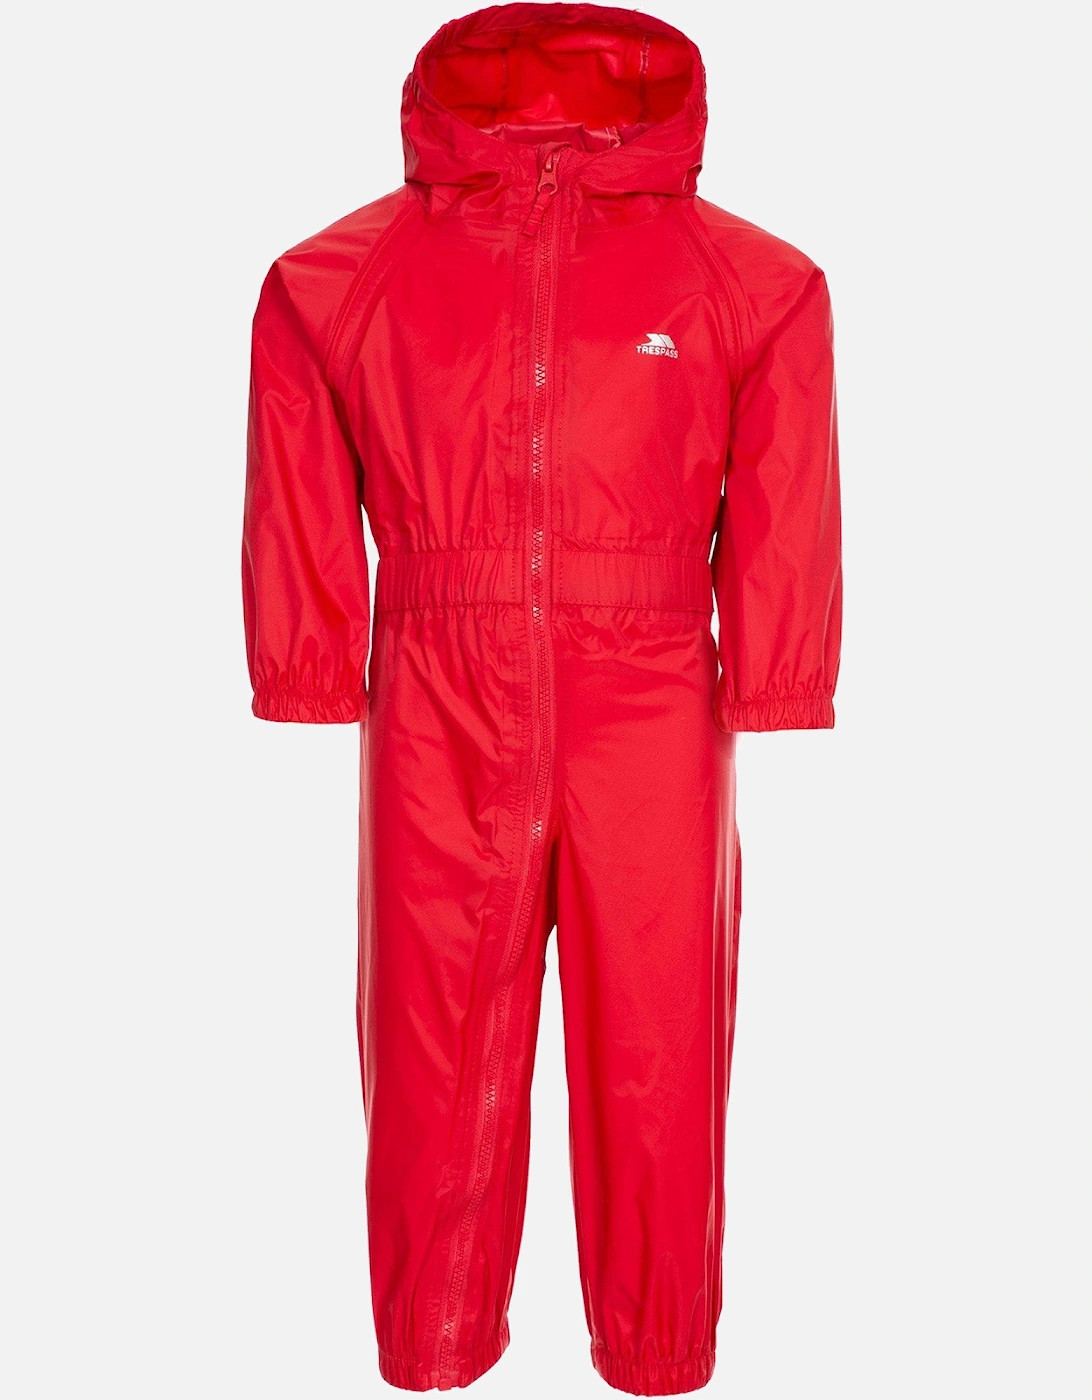 Kids Button Waterproof Rain Suit, 17 of 16